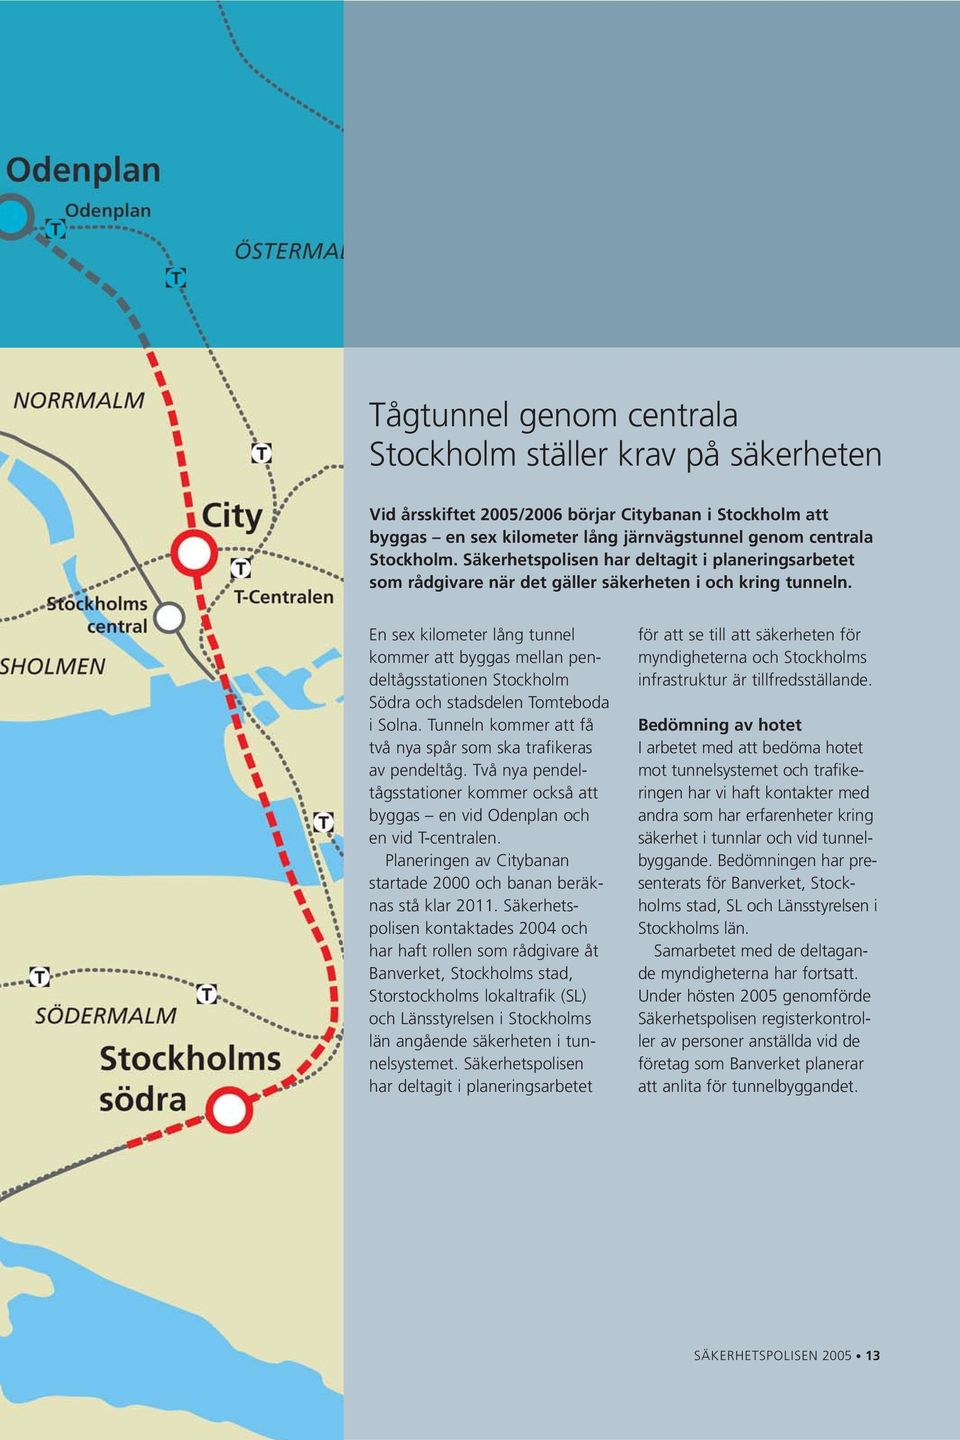 En sex kilometer lång tunnel kommer att byggas mellan pendeltågsstationen Stockholm Södra och stadsdelen Tomteboda i Solna. Tunneln kommer att få två nya spår som ska trafikeras av pendeltåg.